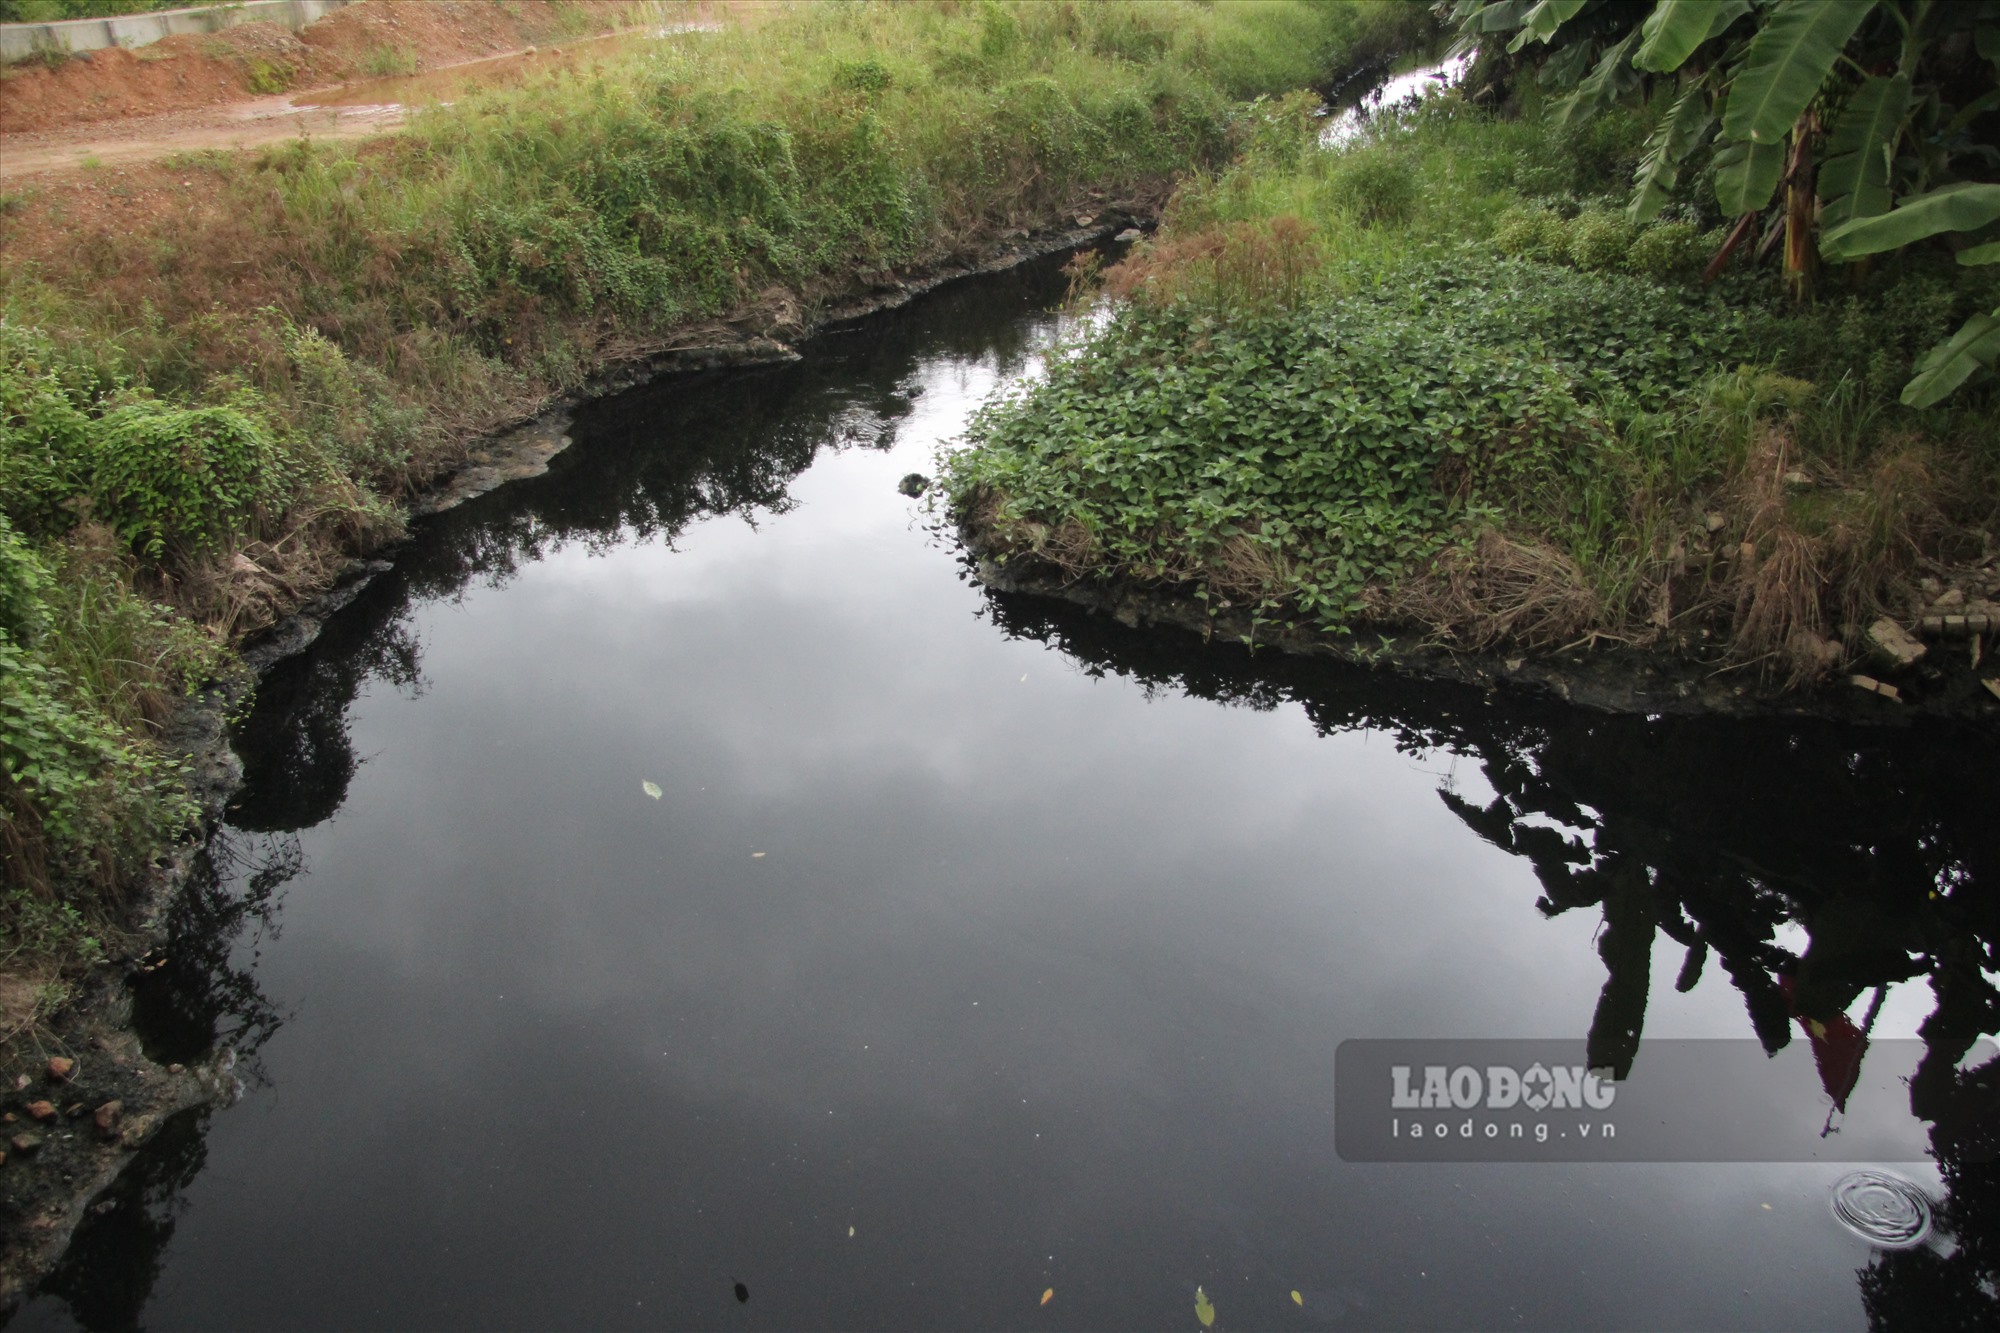 Tình trạng dòng suối Đồng Giành (TP Thái Nguyên) bị ô nhiễm nặng nề khiến cuộc sống của hàng chục hộ dân khổ sở. Ảnh: Việt Bắc.